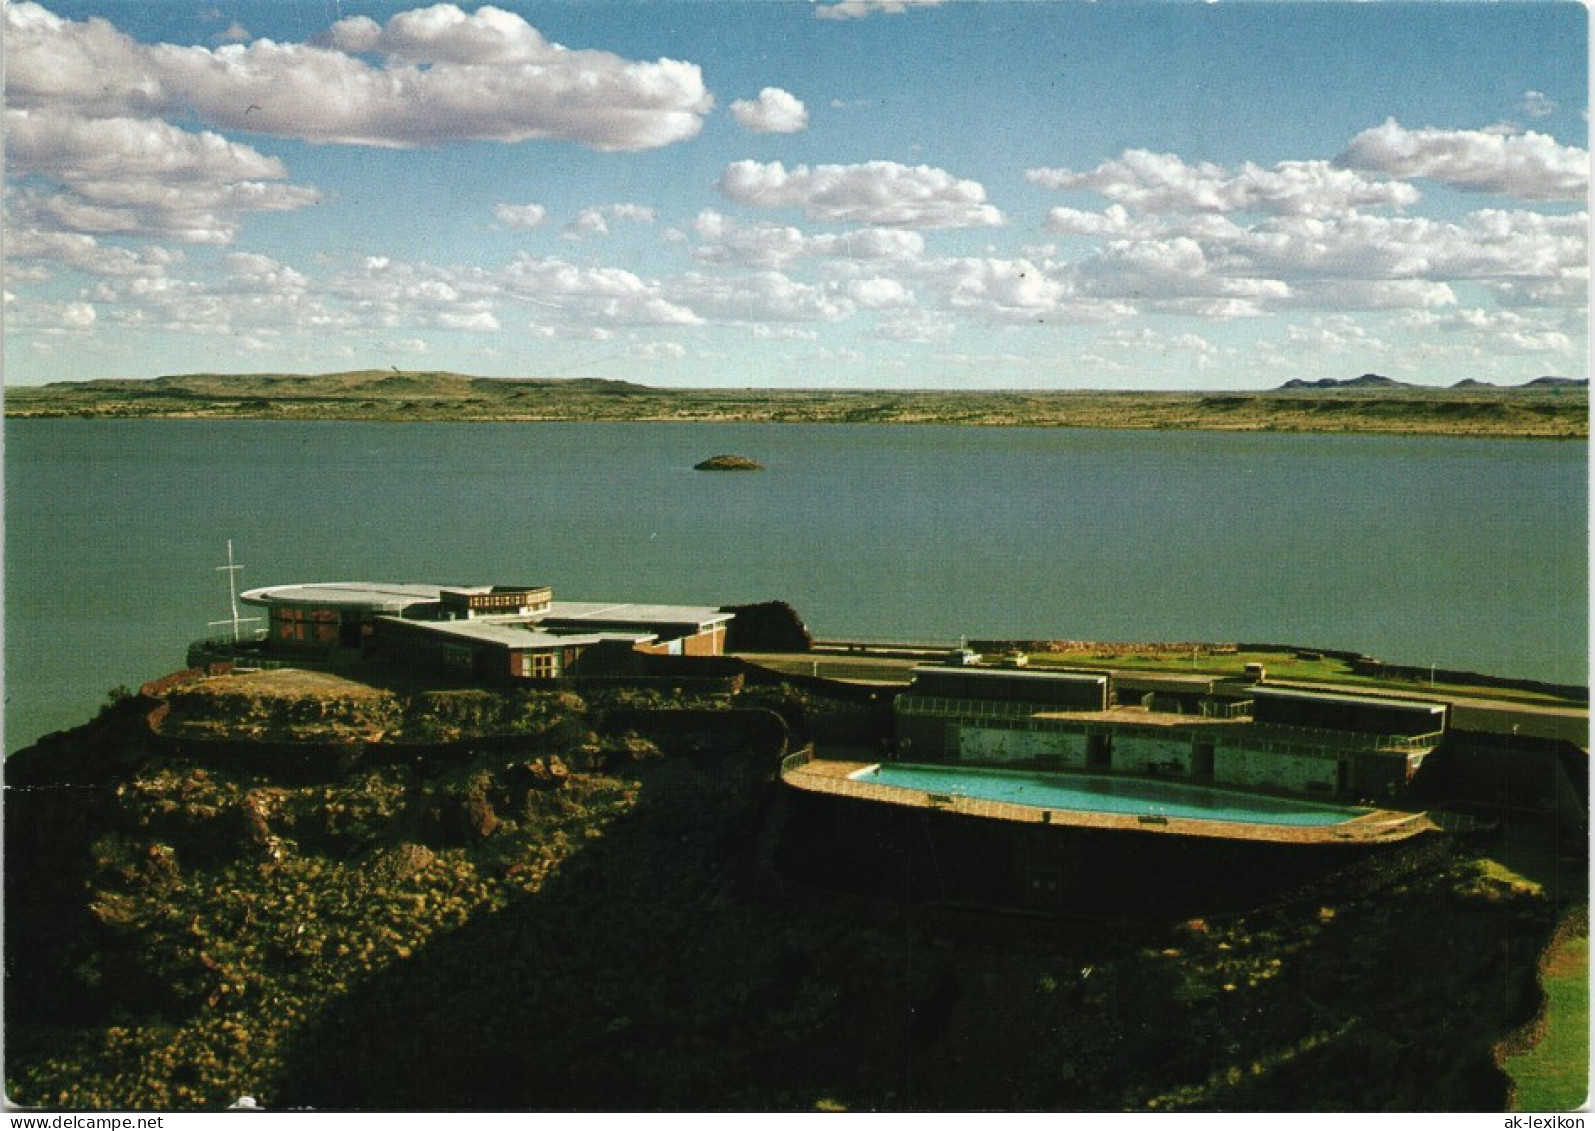 Postcard .Namibia Hardap Mariental SWA Namibia DSWA 1975 - Namibie